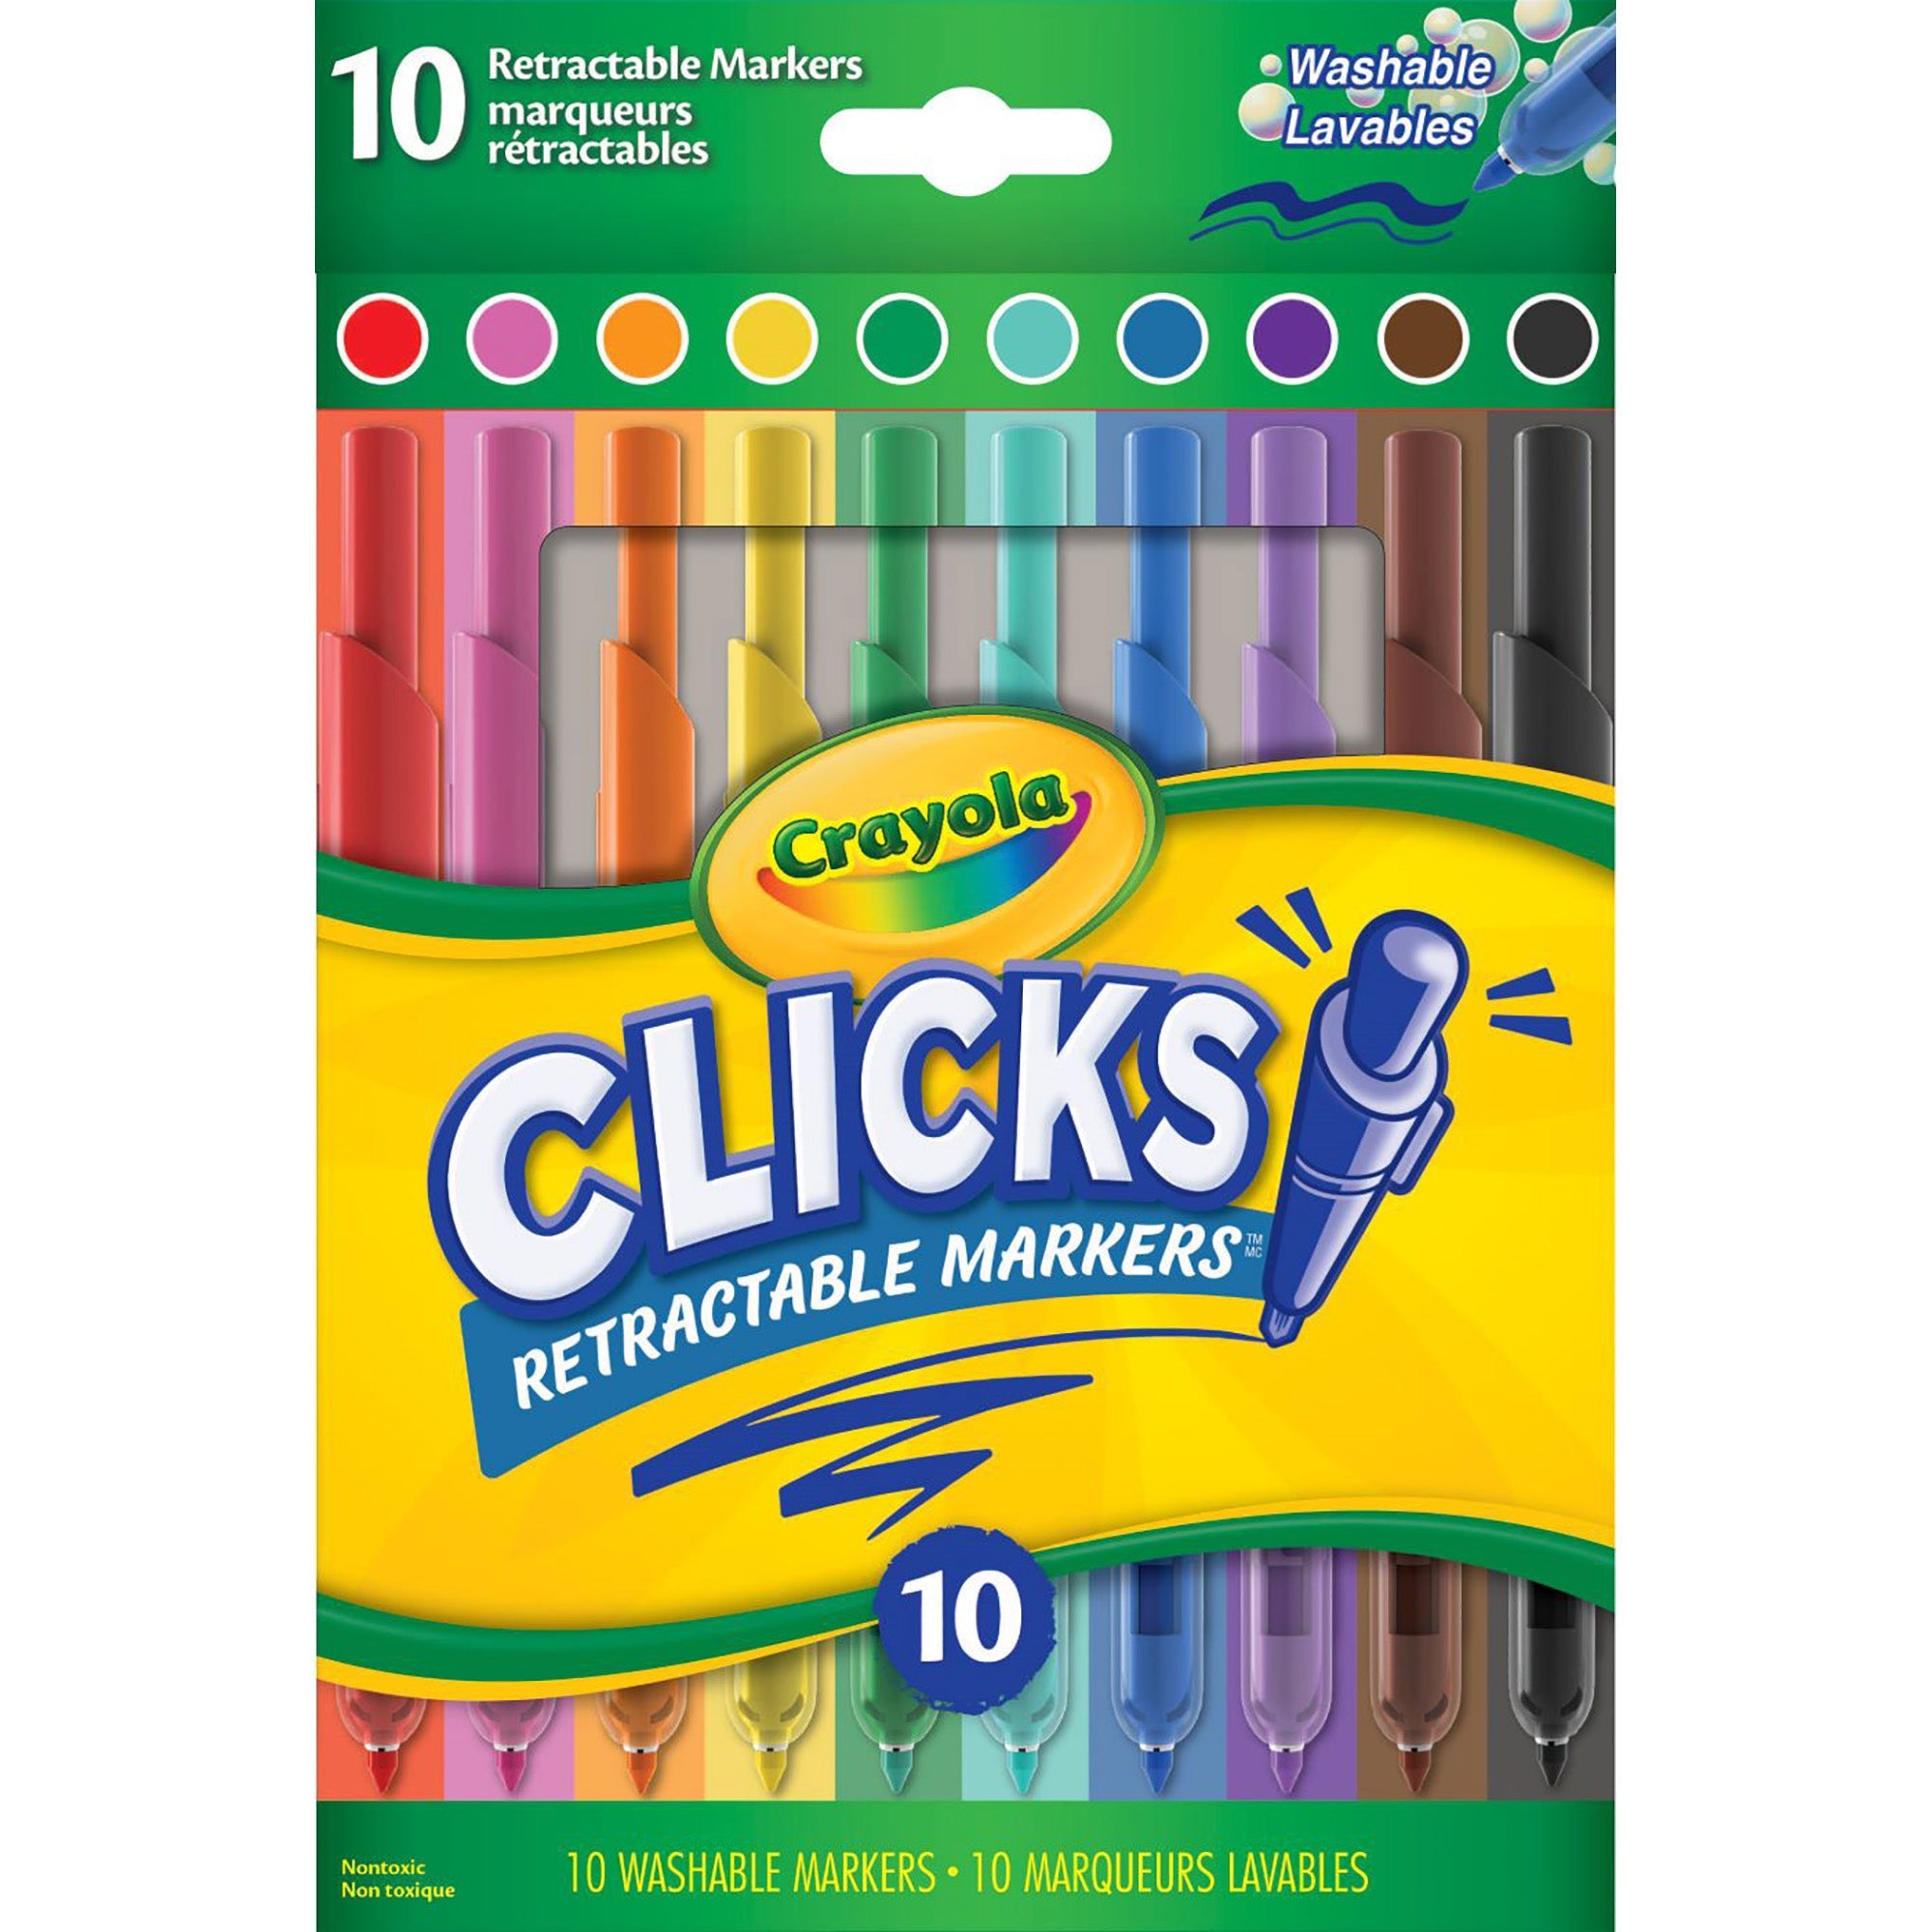 Crayola 10 Clicks Retractable Markers - Washable